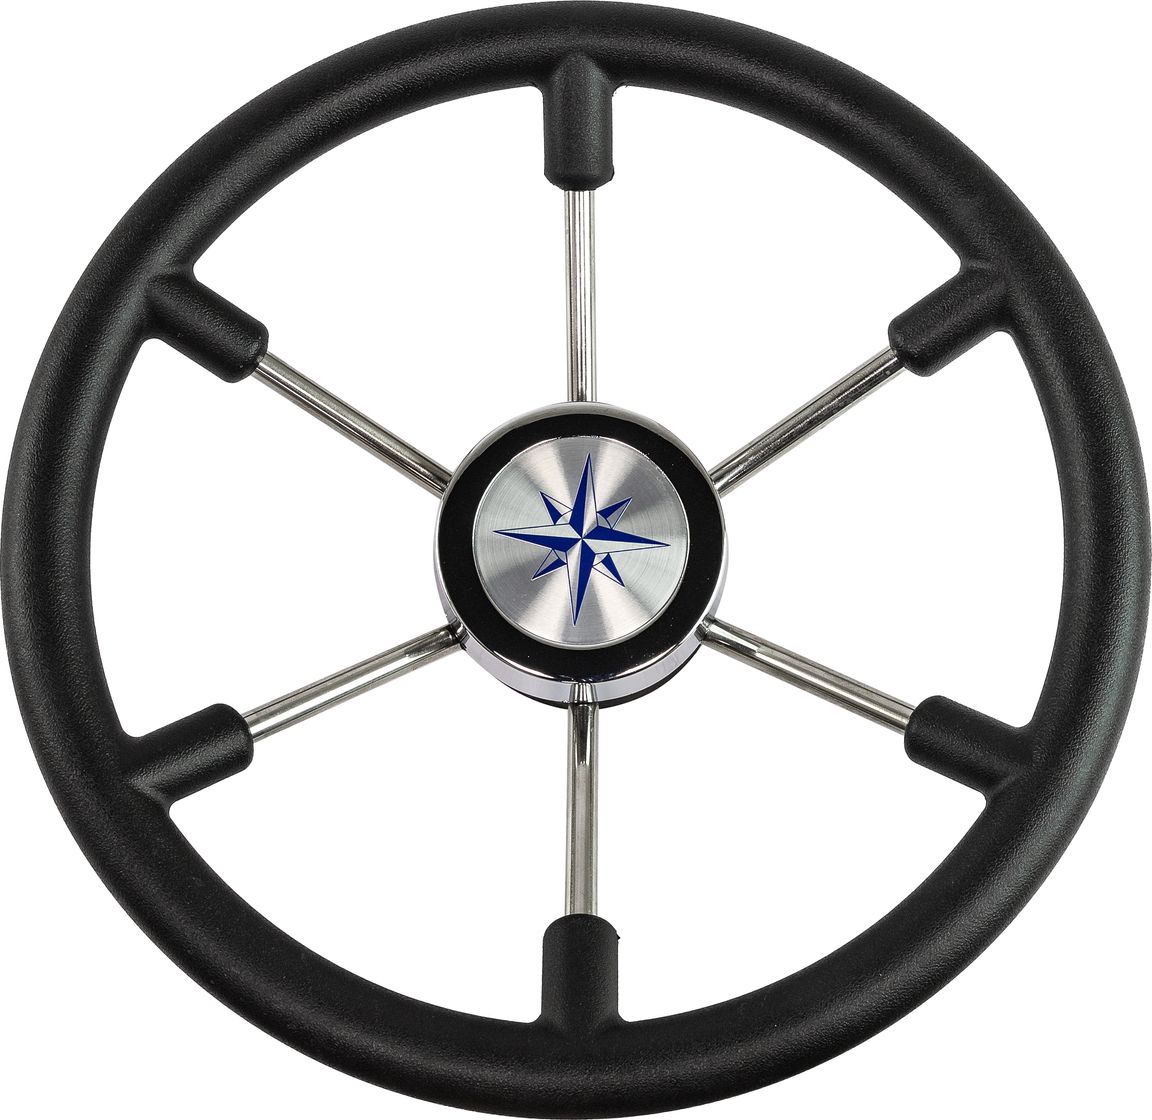 Рулевое колесо LEADER PLAST черный обод серебряные спицы д. 360 мм VN8360-01 рулевое колесо delfino обод спицы серебряные д 310 мм vn70103 01